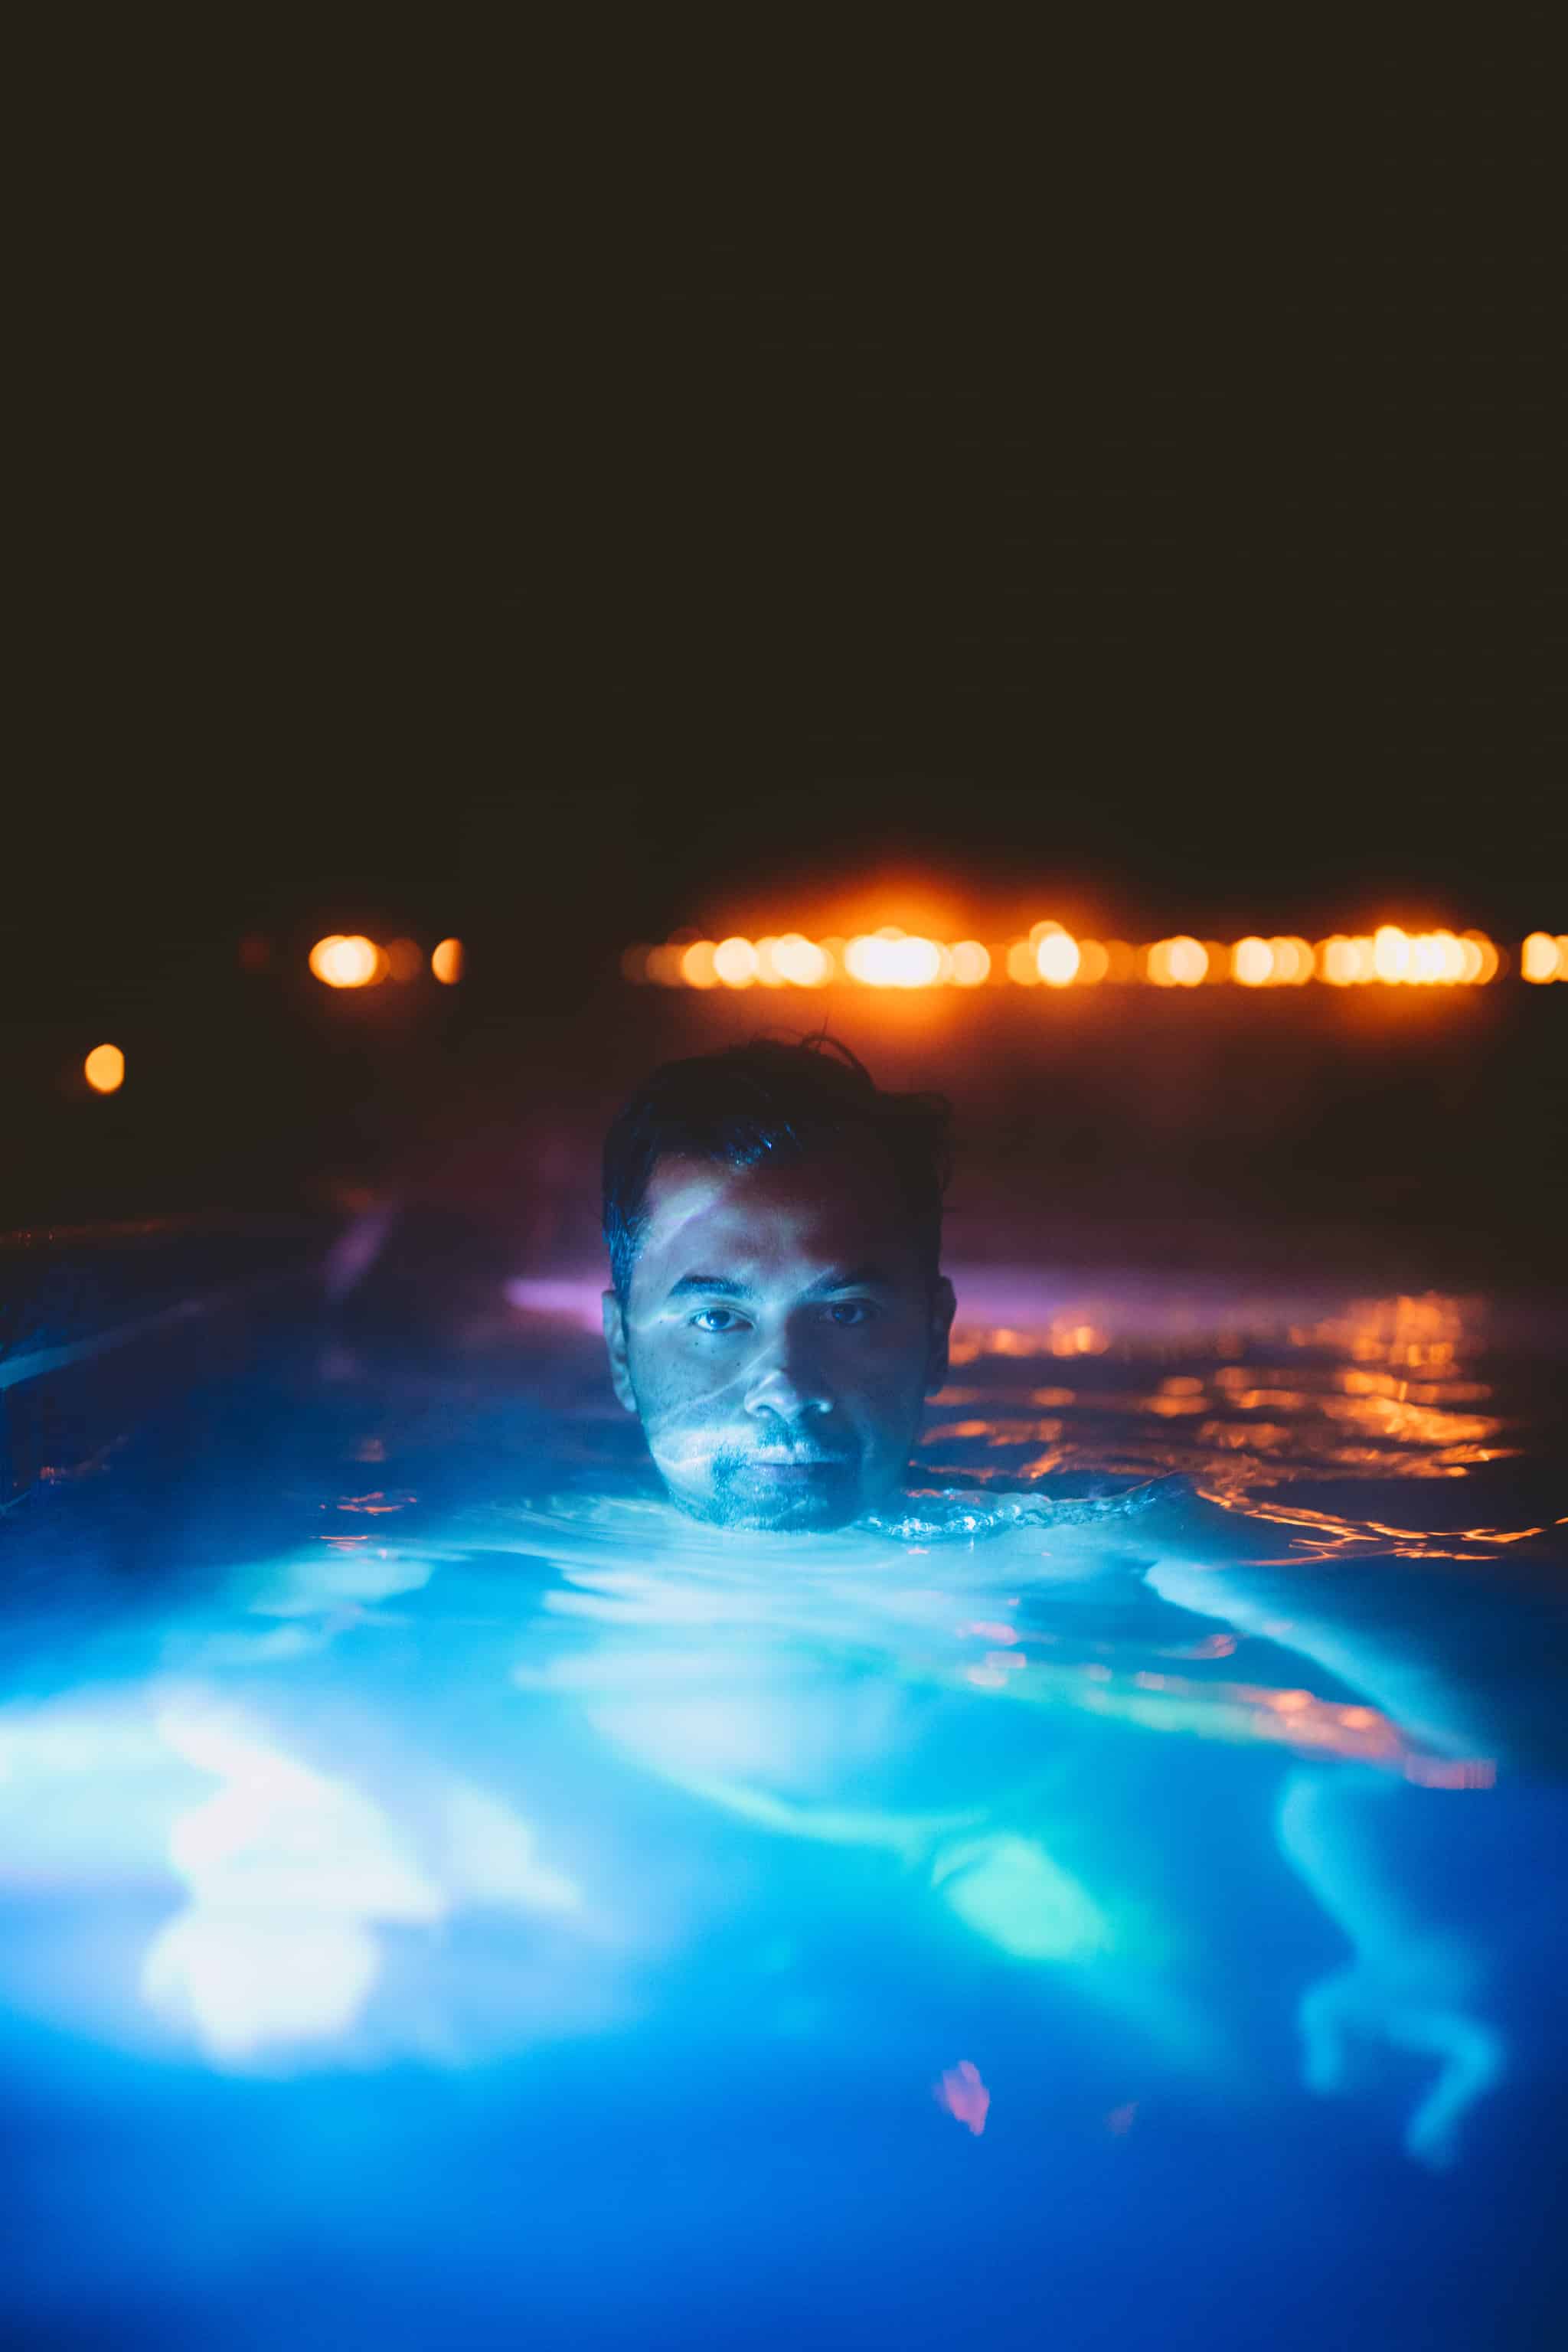 Berty Mandagie at Bozeman Hot Springs - TheMandagies.com